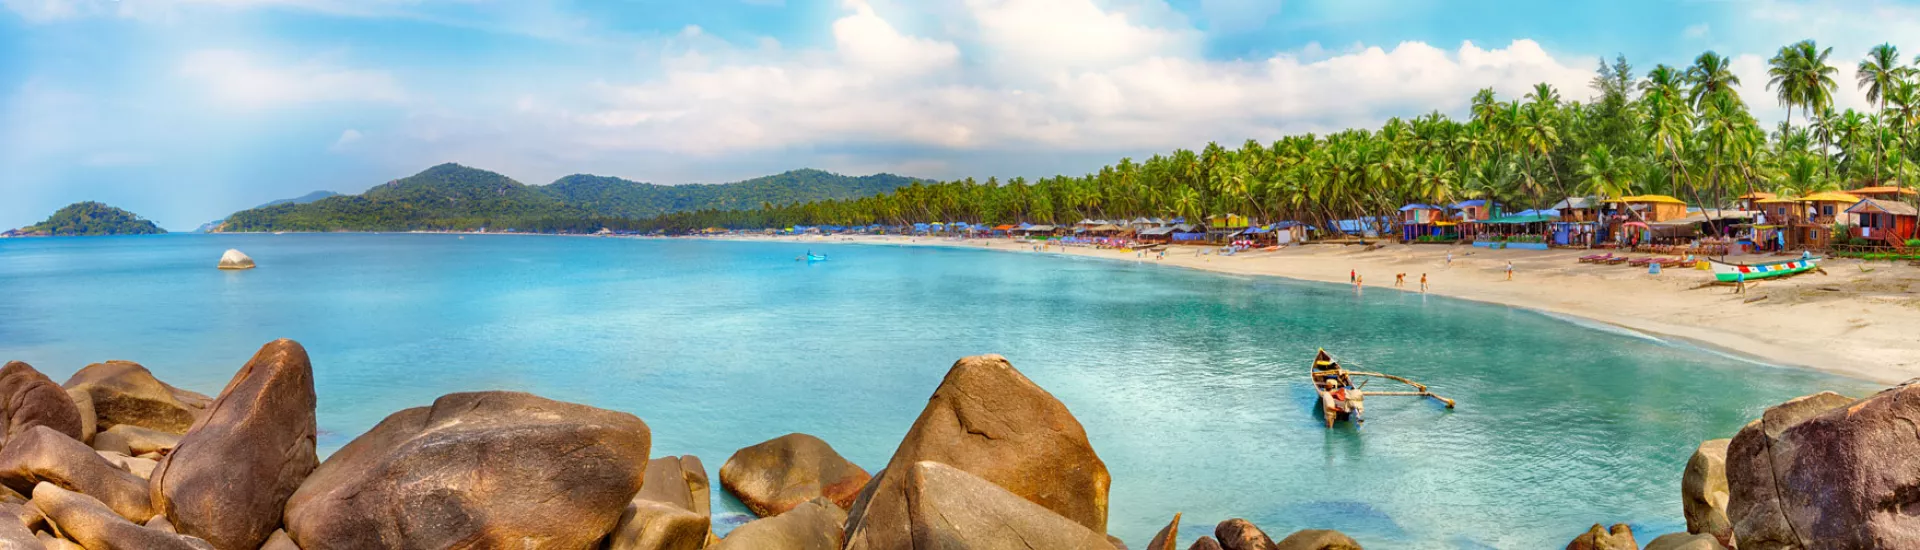 Strandidylle auf Goa in Indien